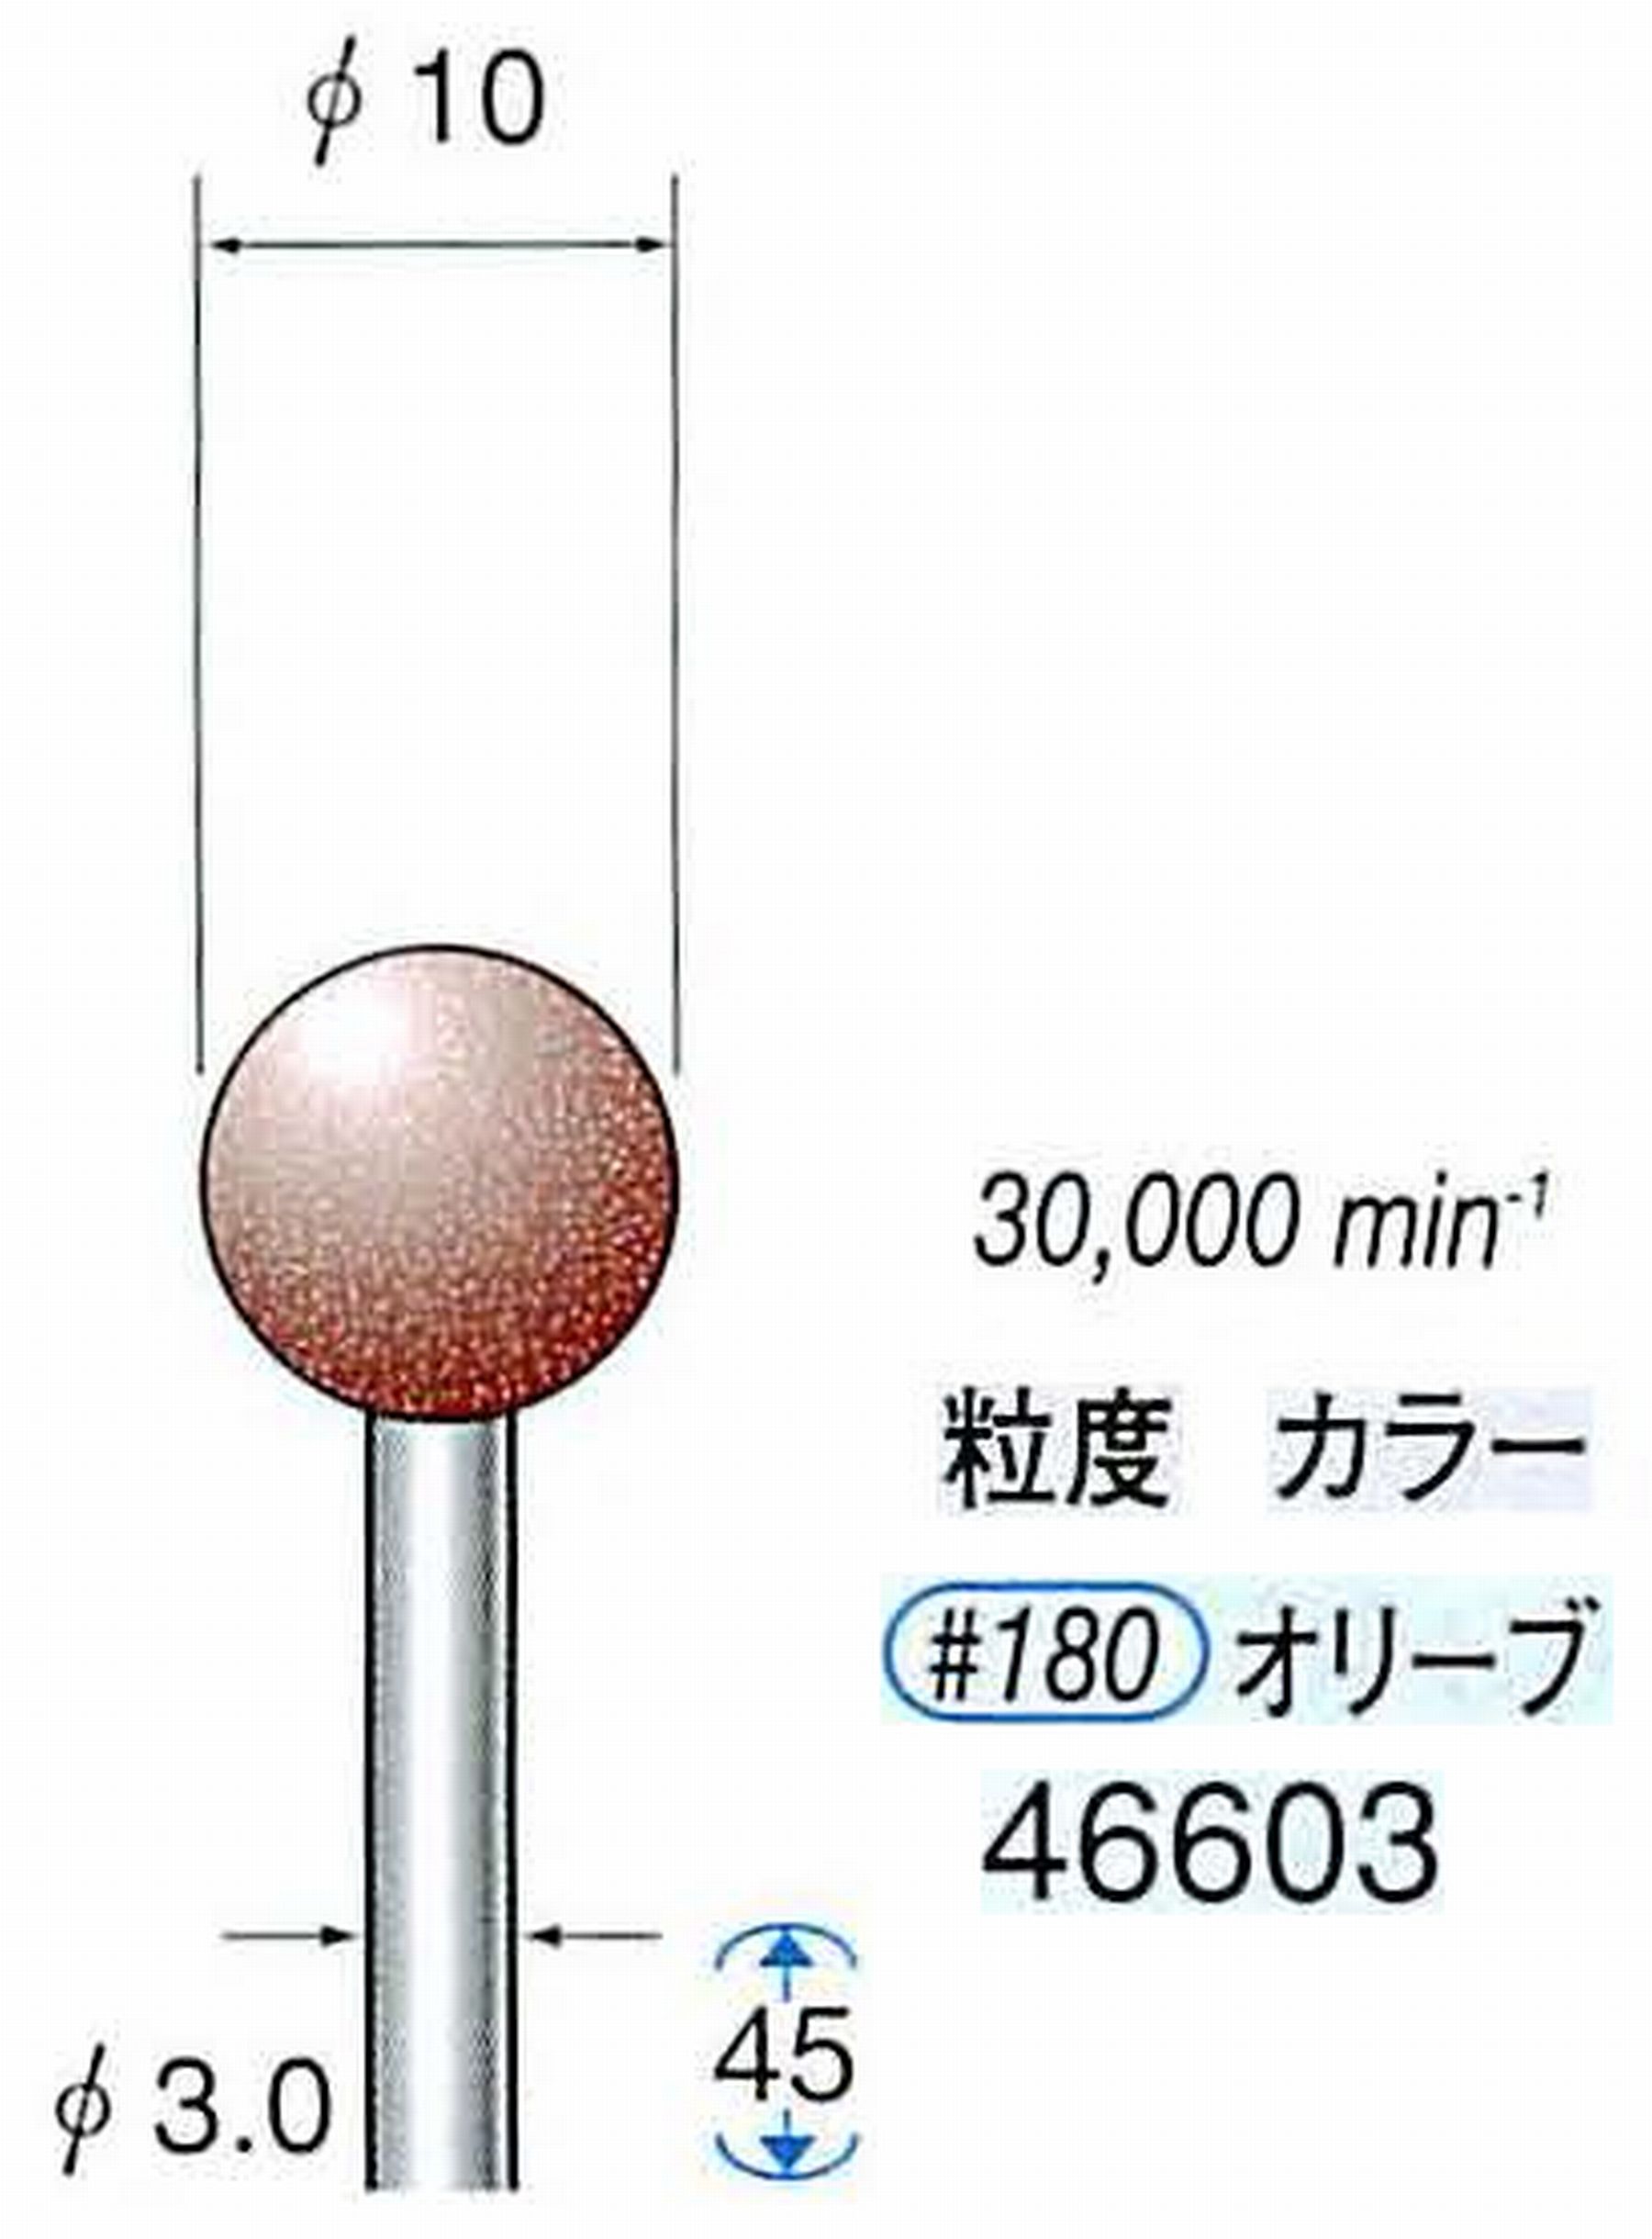 ナカニシ/NAKANISHI ゴム砥石 パワーポリッシャー(WA砥粒)ゴム質の硬さ：ミディアム 軸径(シャンク) φ3.0mm 46603